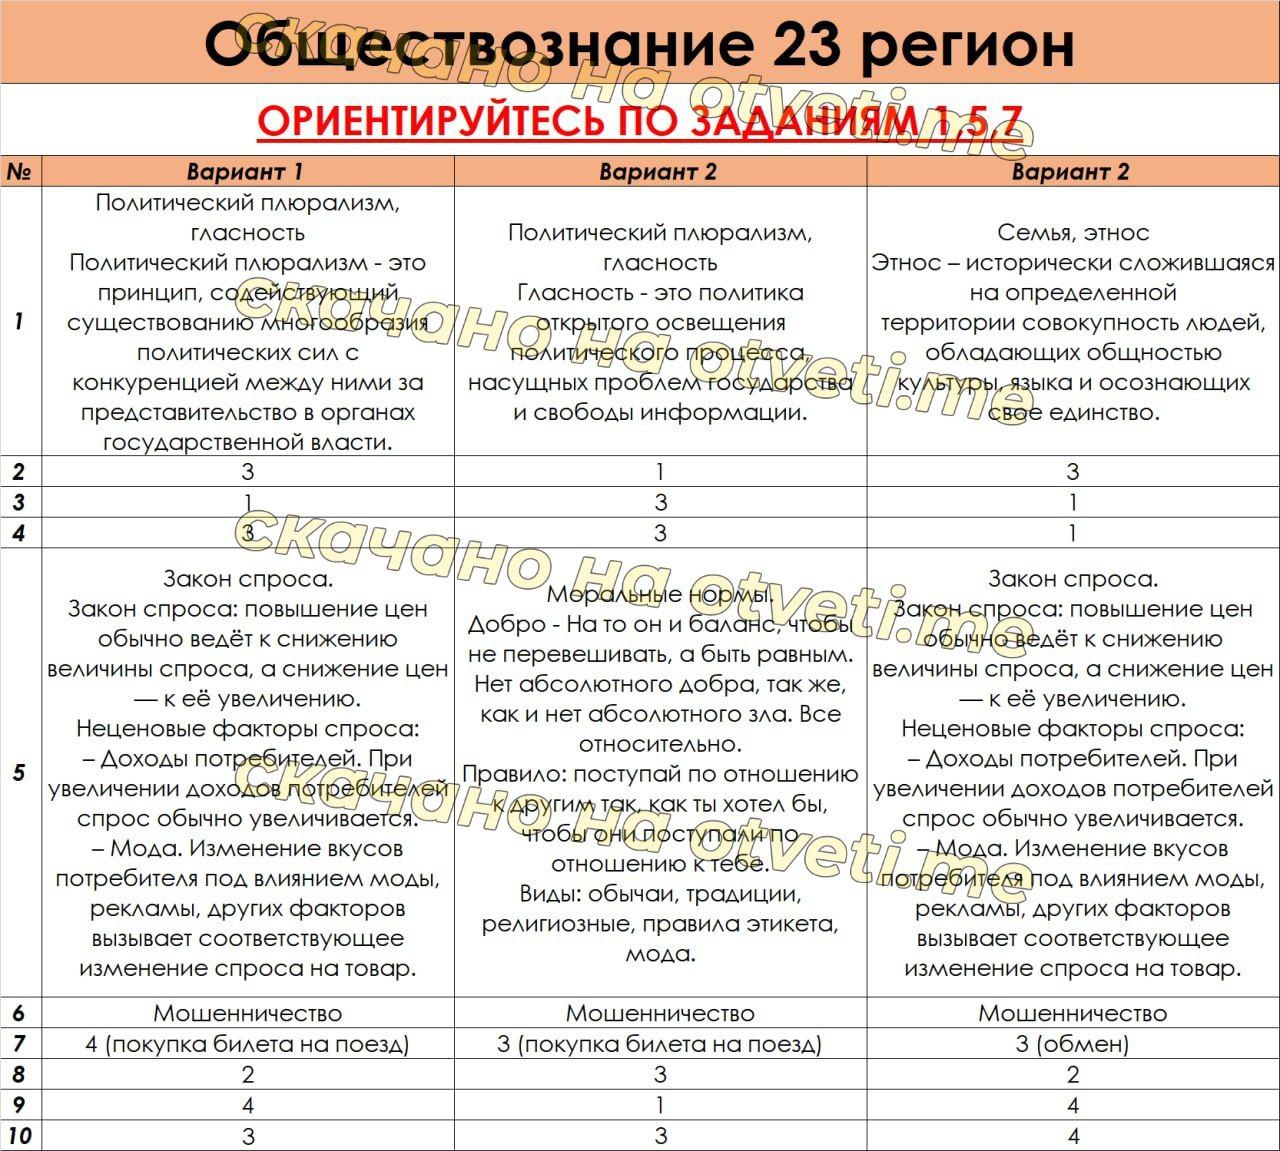 Русский язык огэ ответы телеграмм фото 36